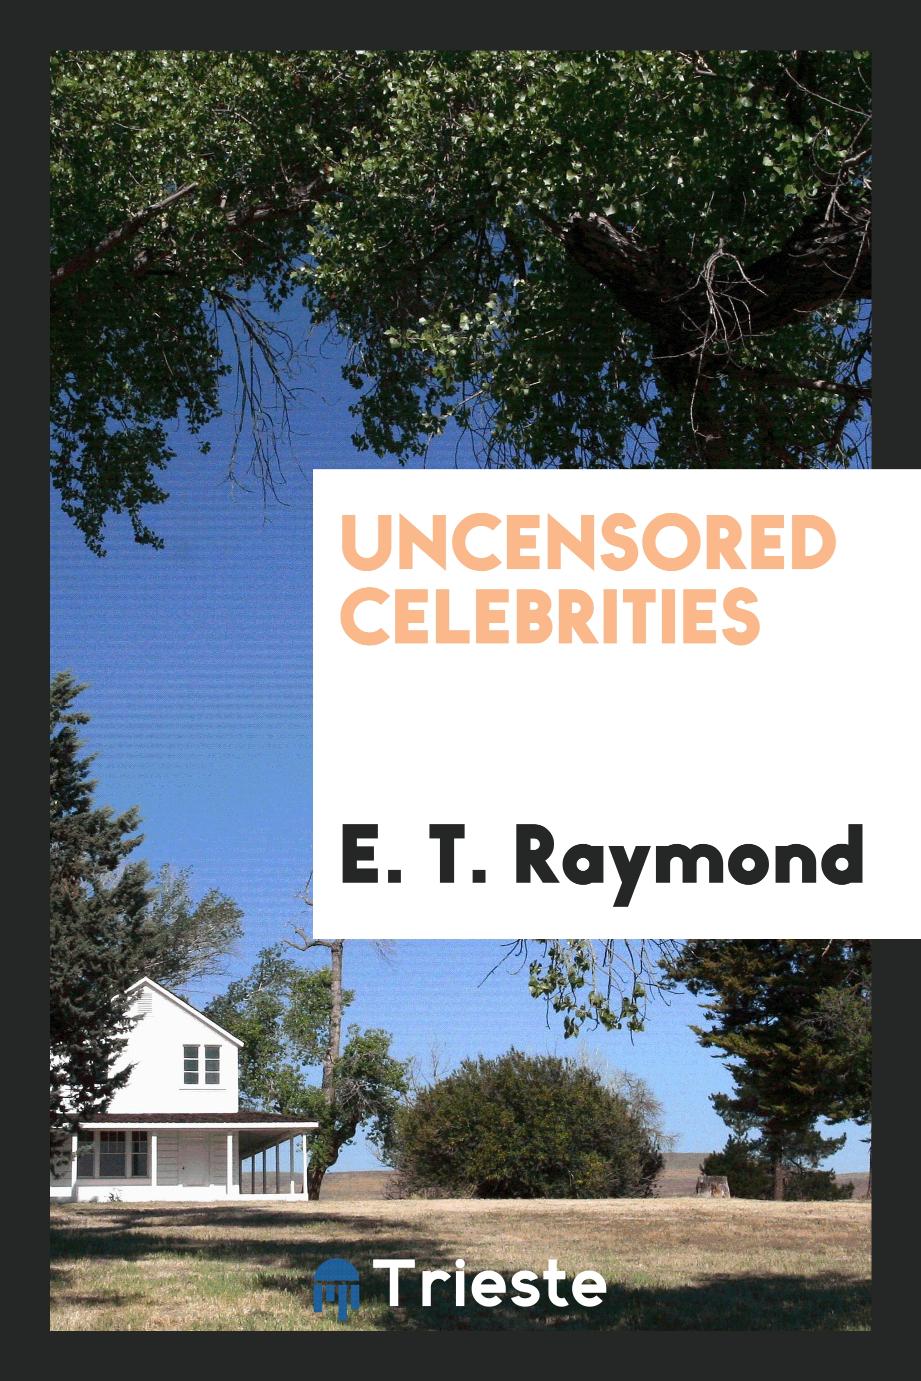 Uncensored celebrities